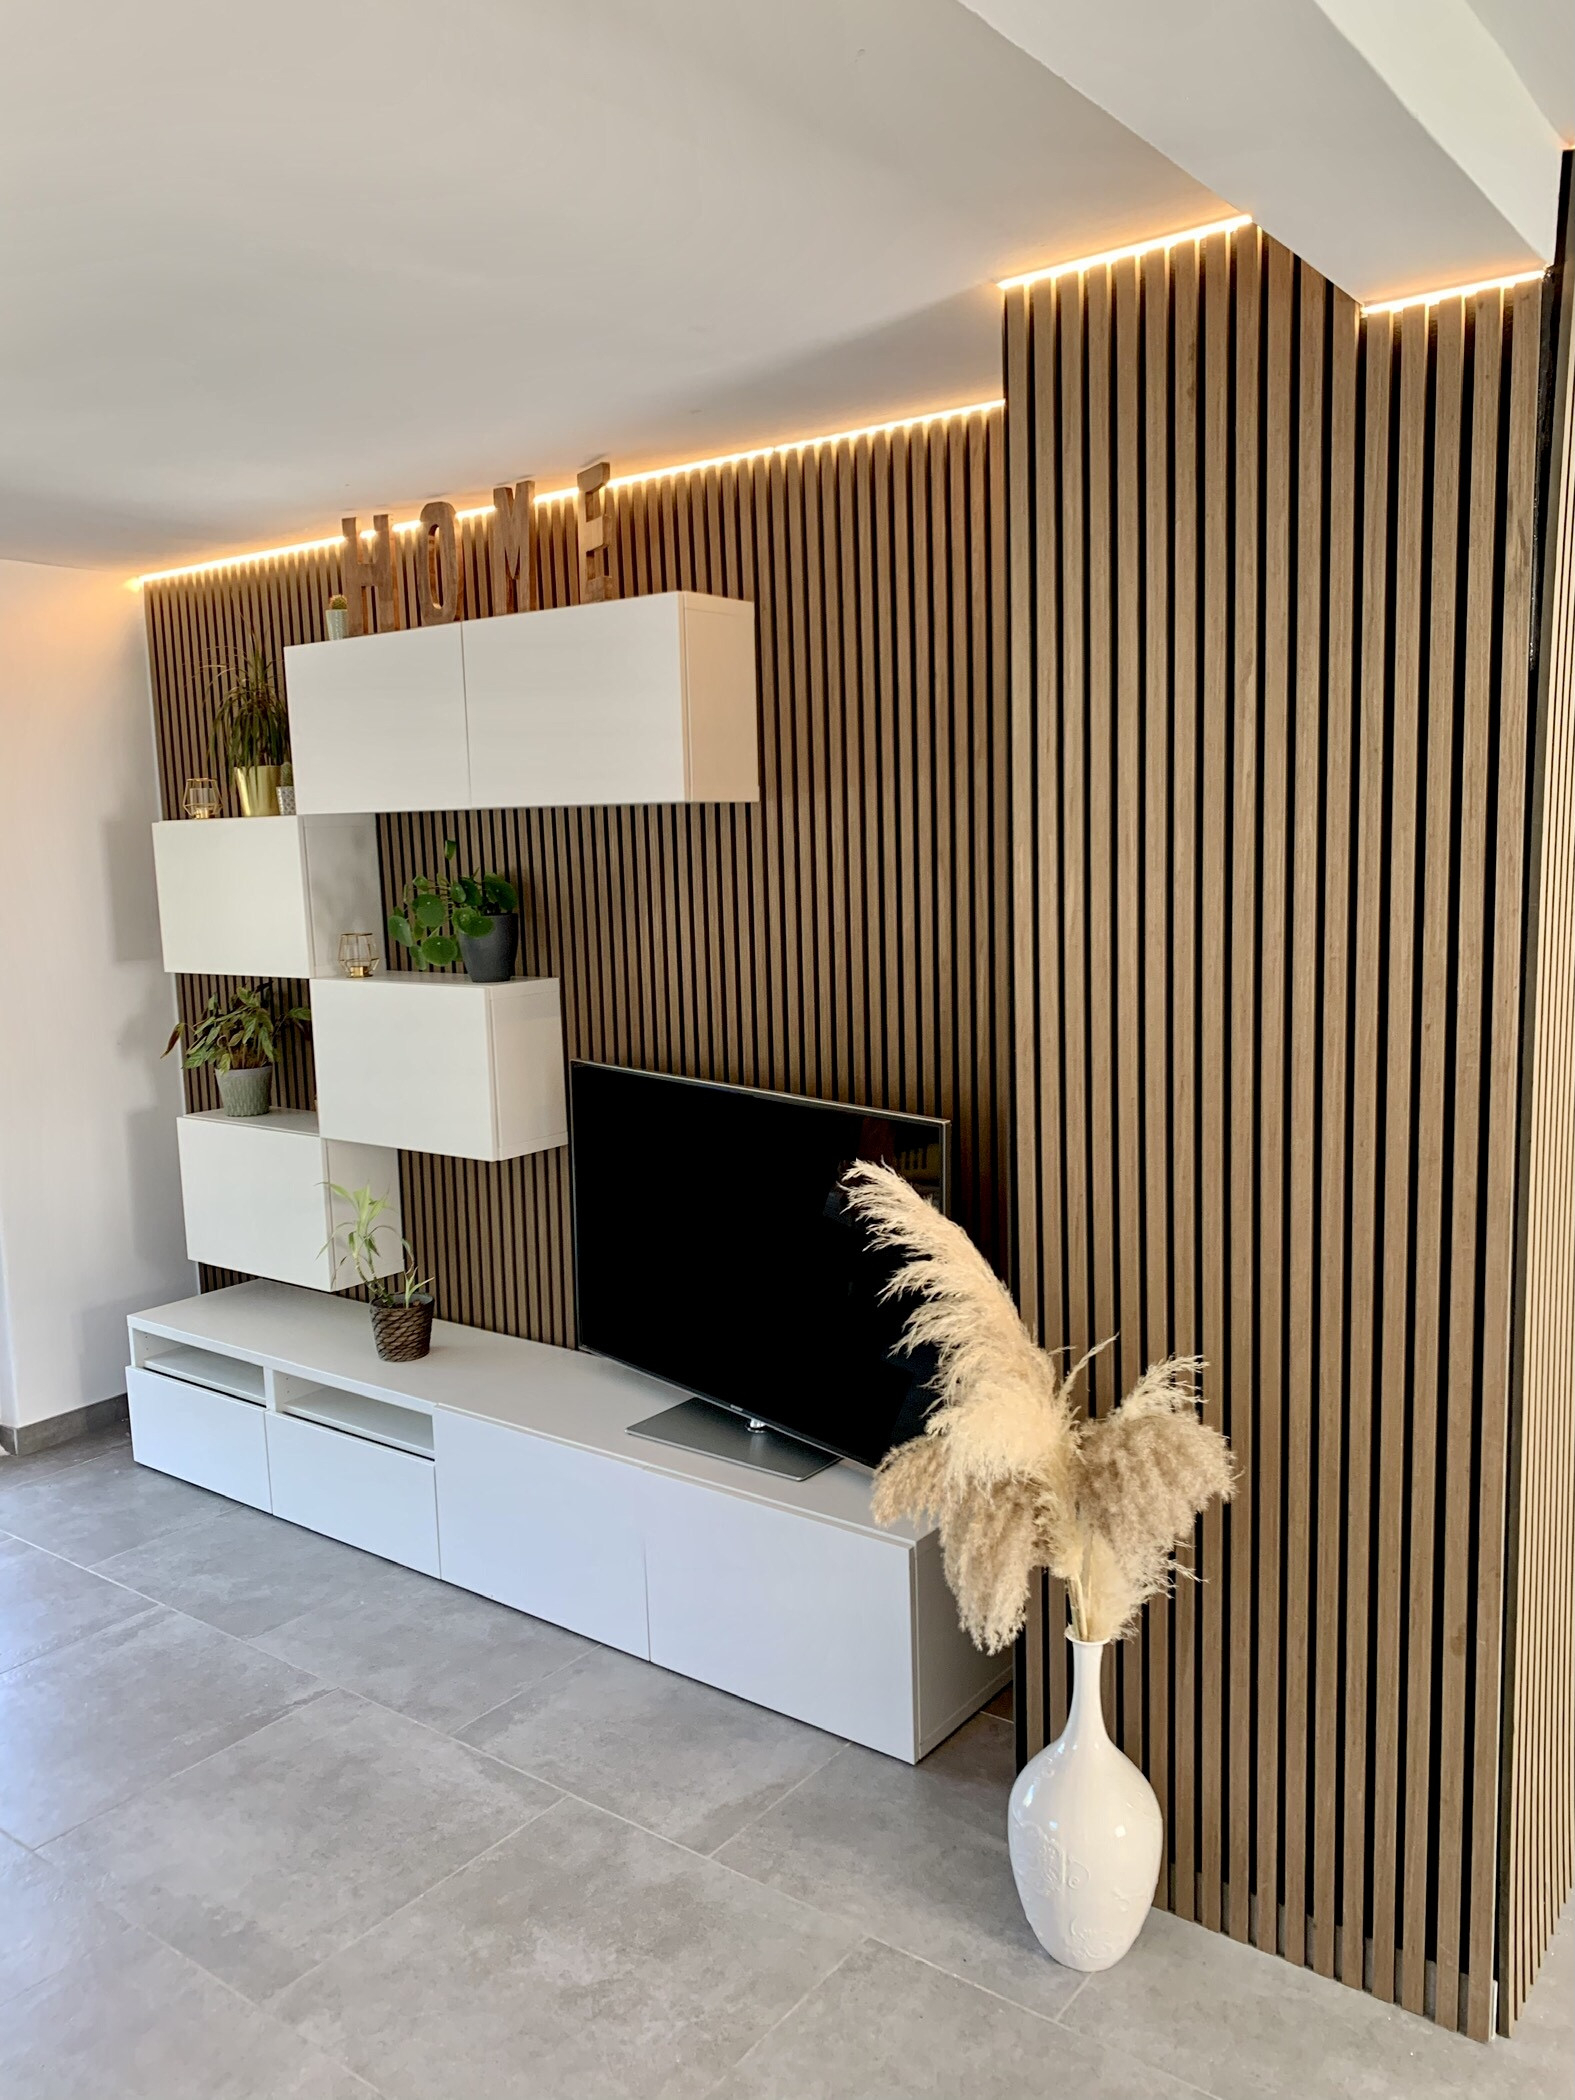 Wohnzimmer Modernisiert Mit Led Beleuchtung Und Akustikpaneelen intended for Led Wohnzimmer